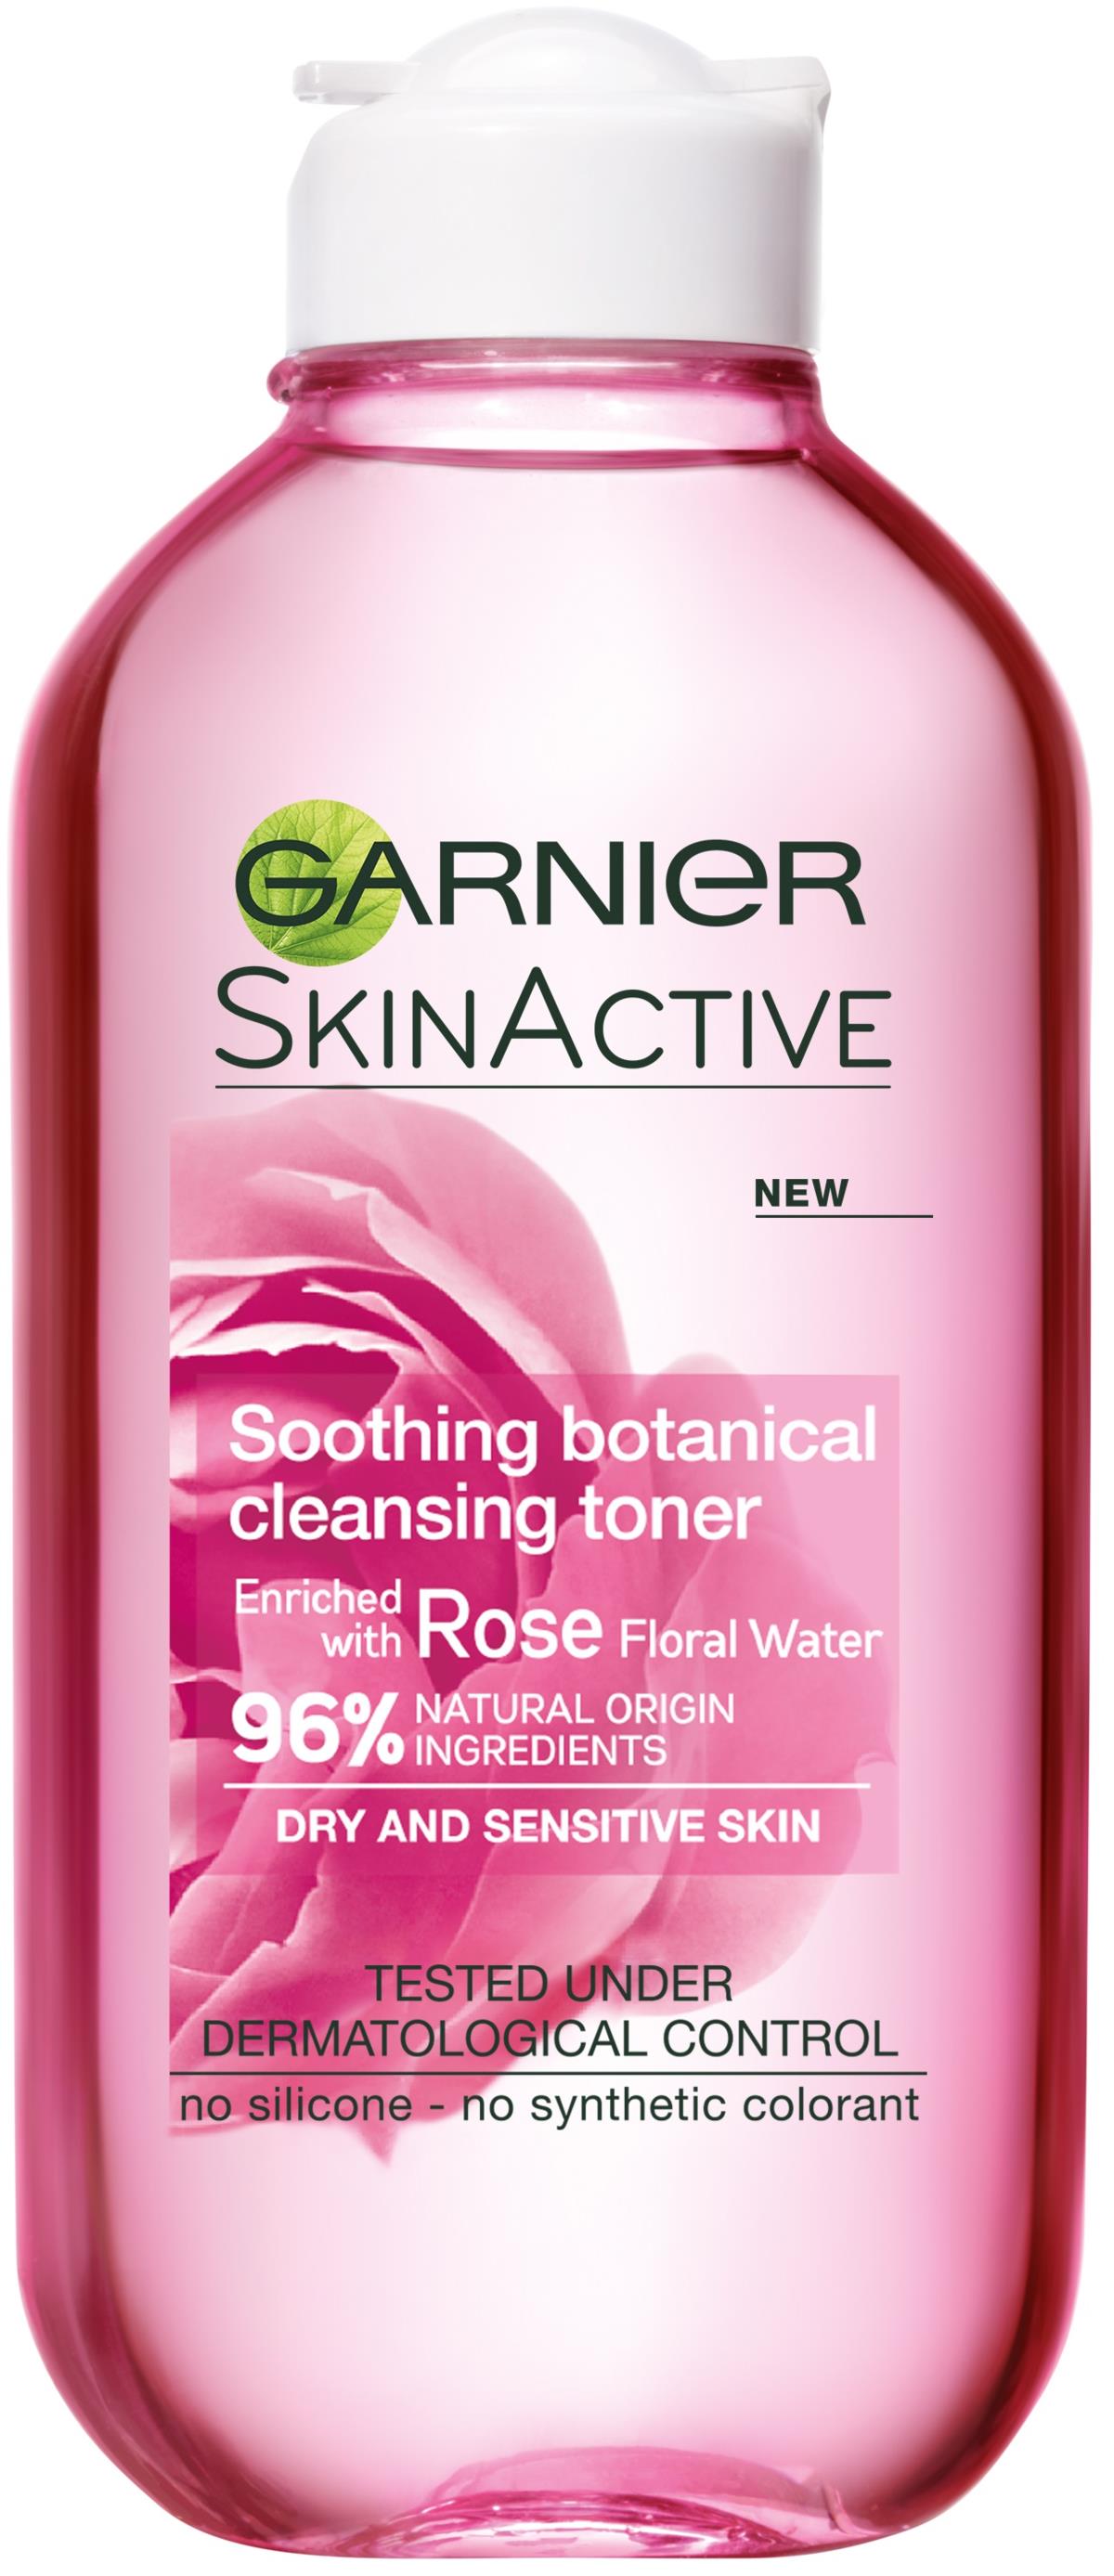 Botanical ml Garnier Soothing 200 Toner SkinActive Cleansing